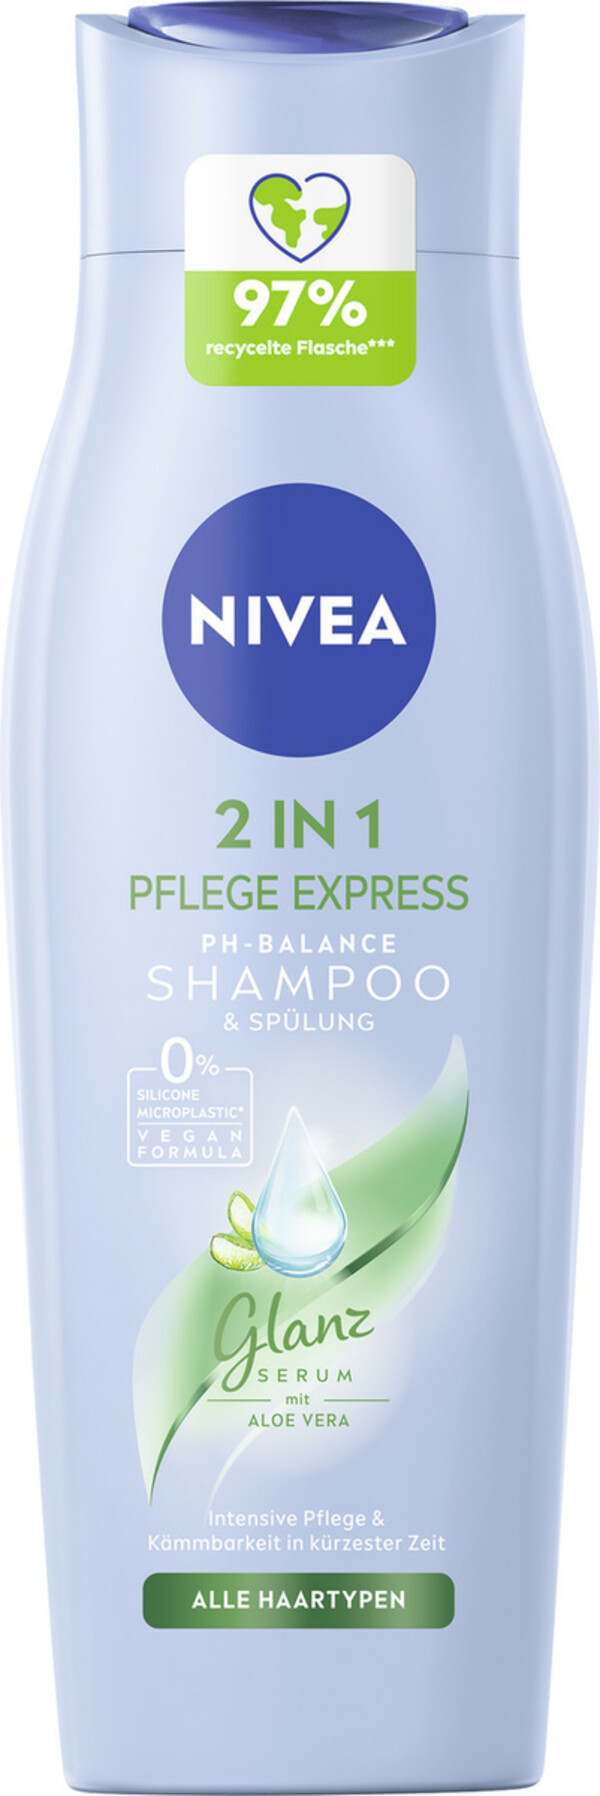 Bild 1 von Nivea 2in1 Pflege Express Shampoo & Spülung 250ML